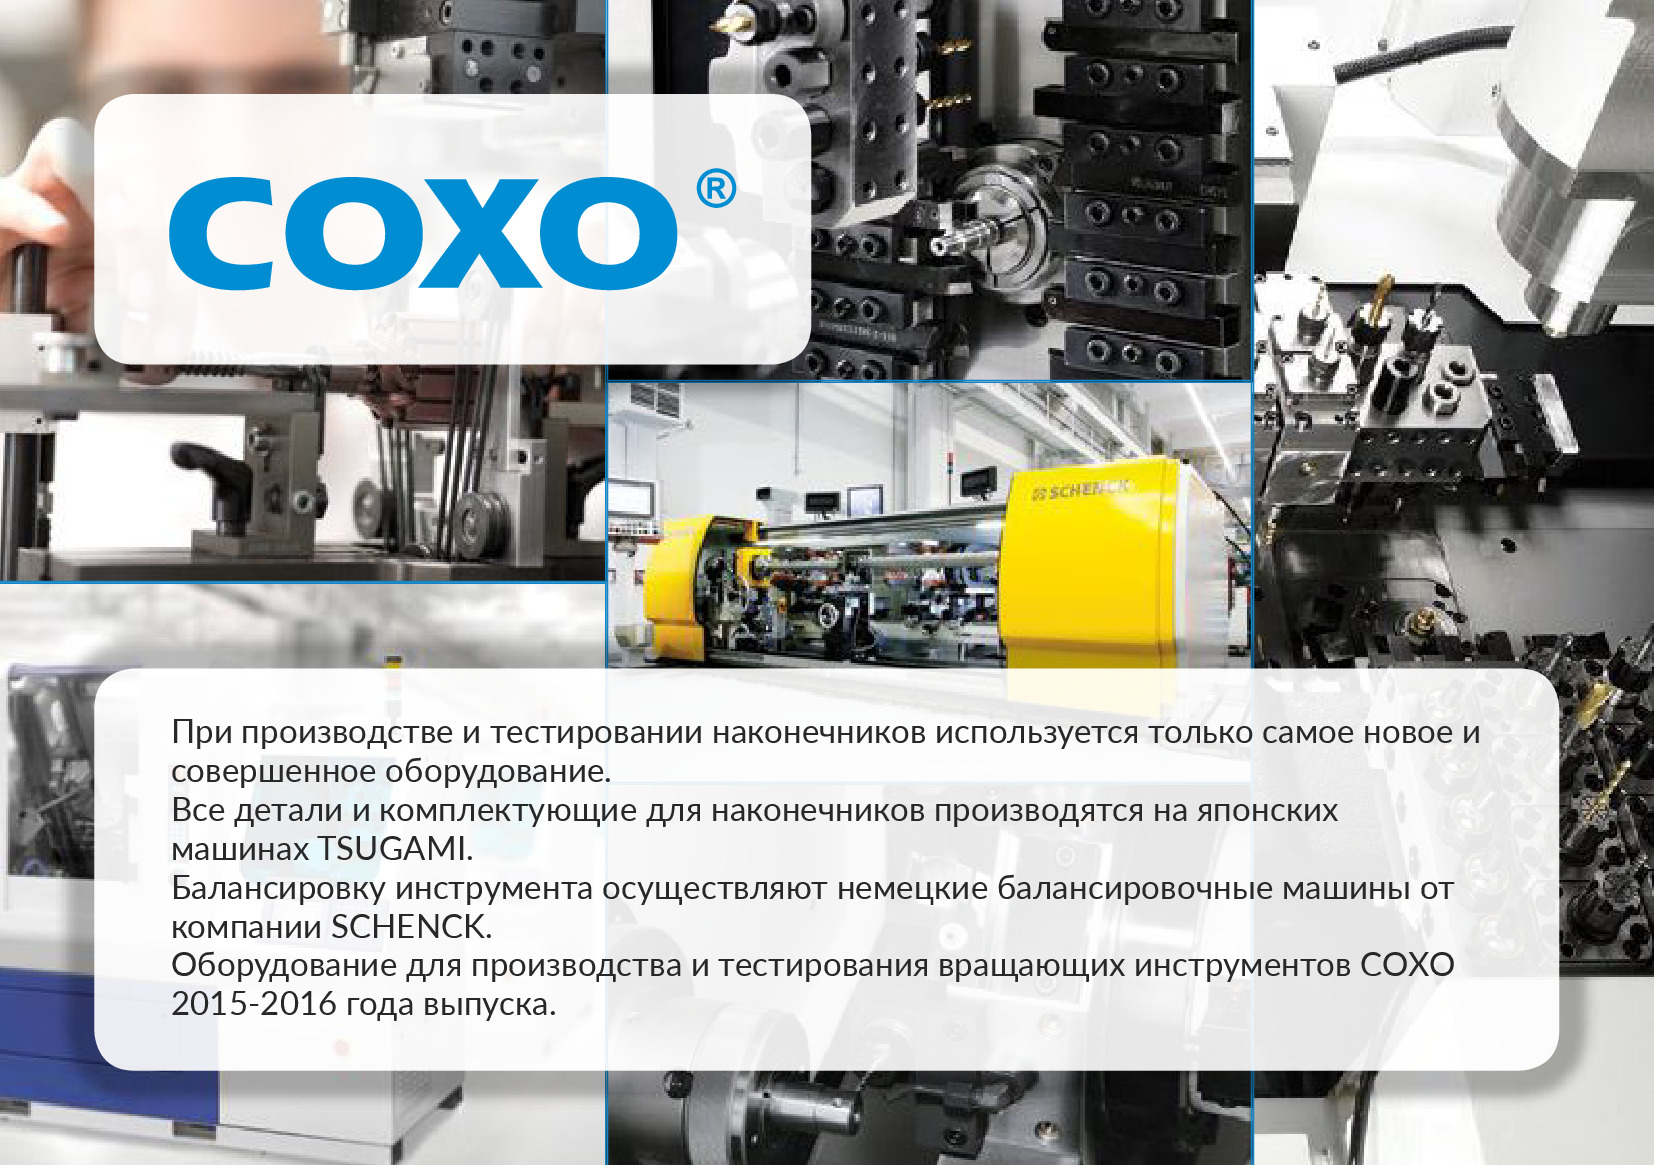 Обложка каталога для CX309-F (Т-1003) - турбинный наконечник, ортопедическая головка, со светом (встроенный генератор)